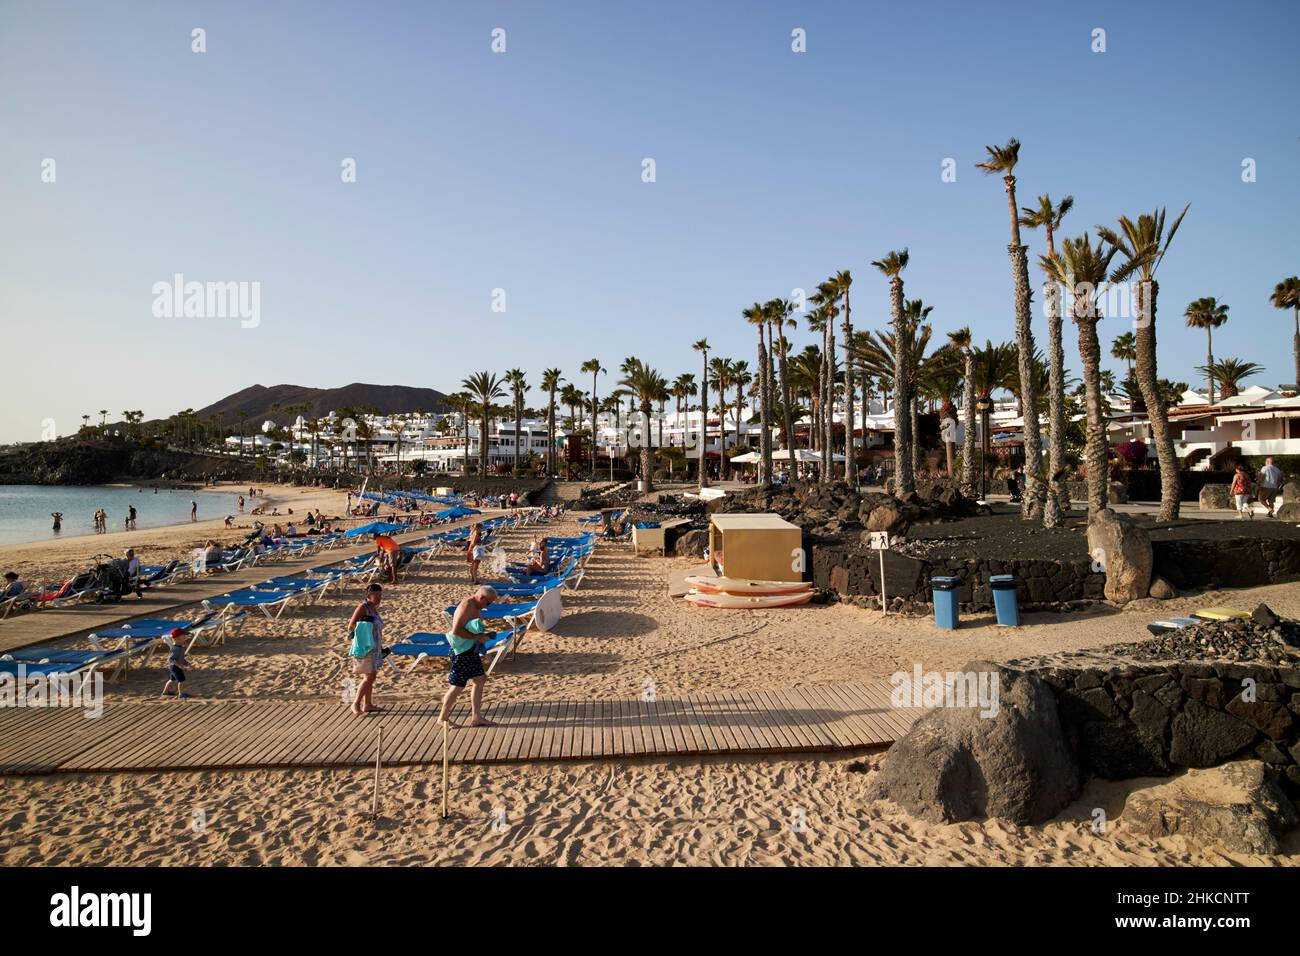 Sonnenliegen am Strand Winter Sonnenurlaub playa blanca Lanzarote Kanarische Inseln Spanien Stockfoto